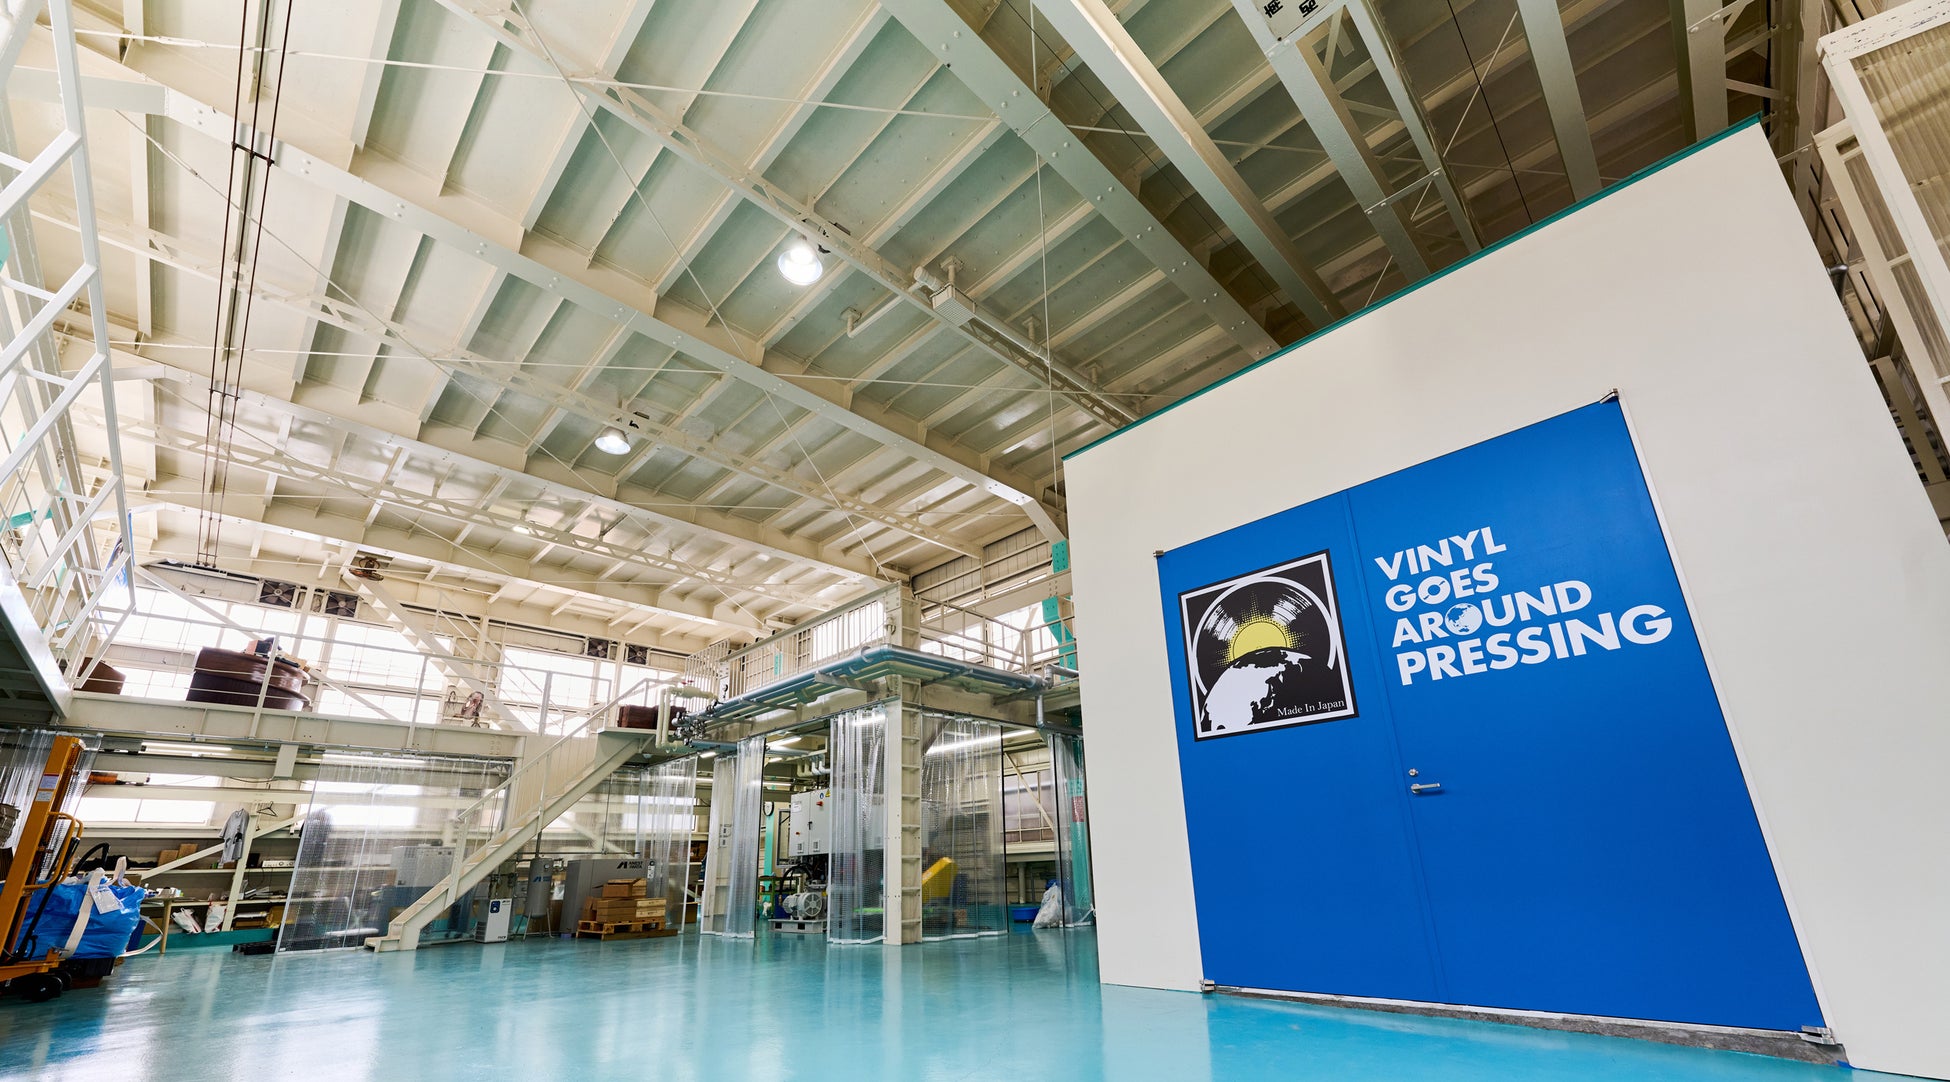 アナログ・レコード・プレス工場「VINYL GOES AROUND PRESSING」が本格稼働、受注・生産を開始いたします。